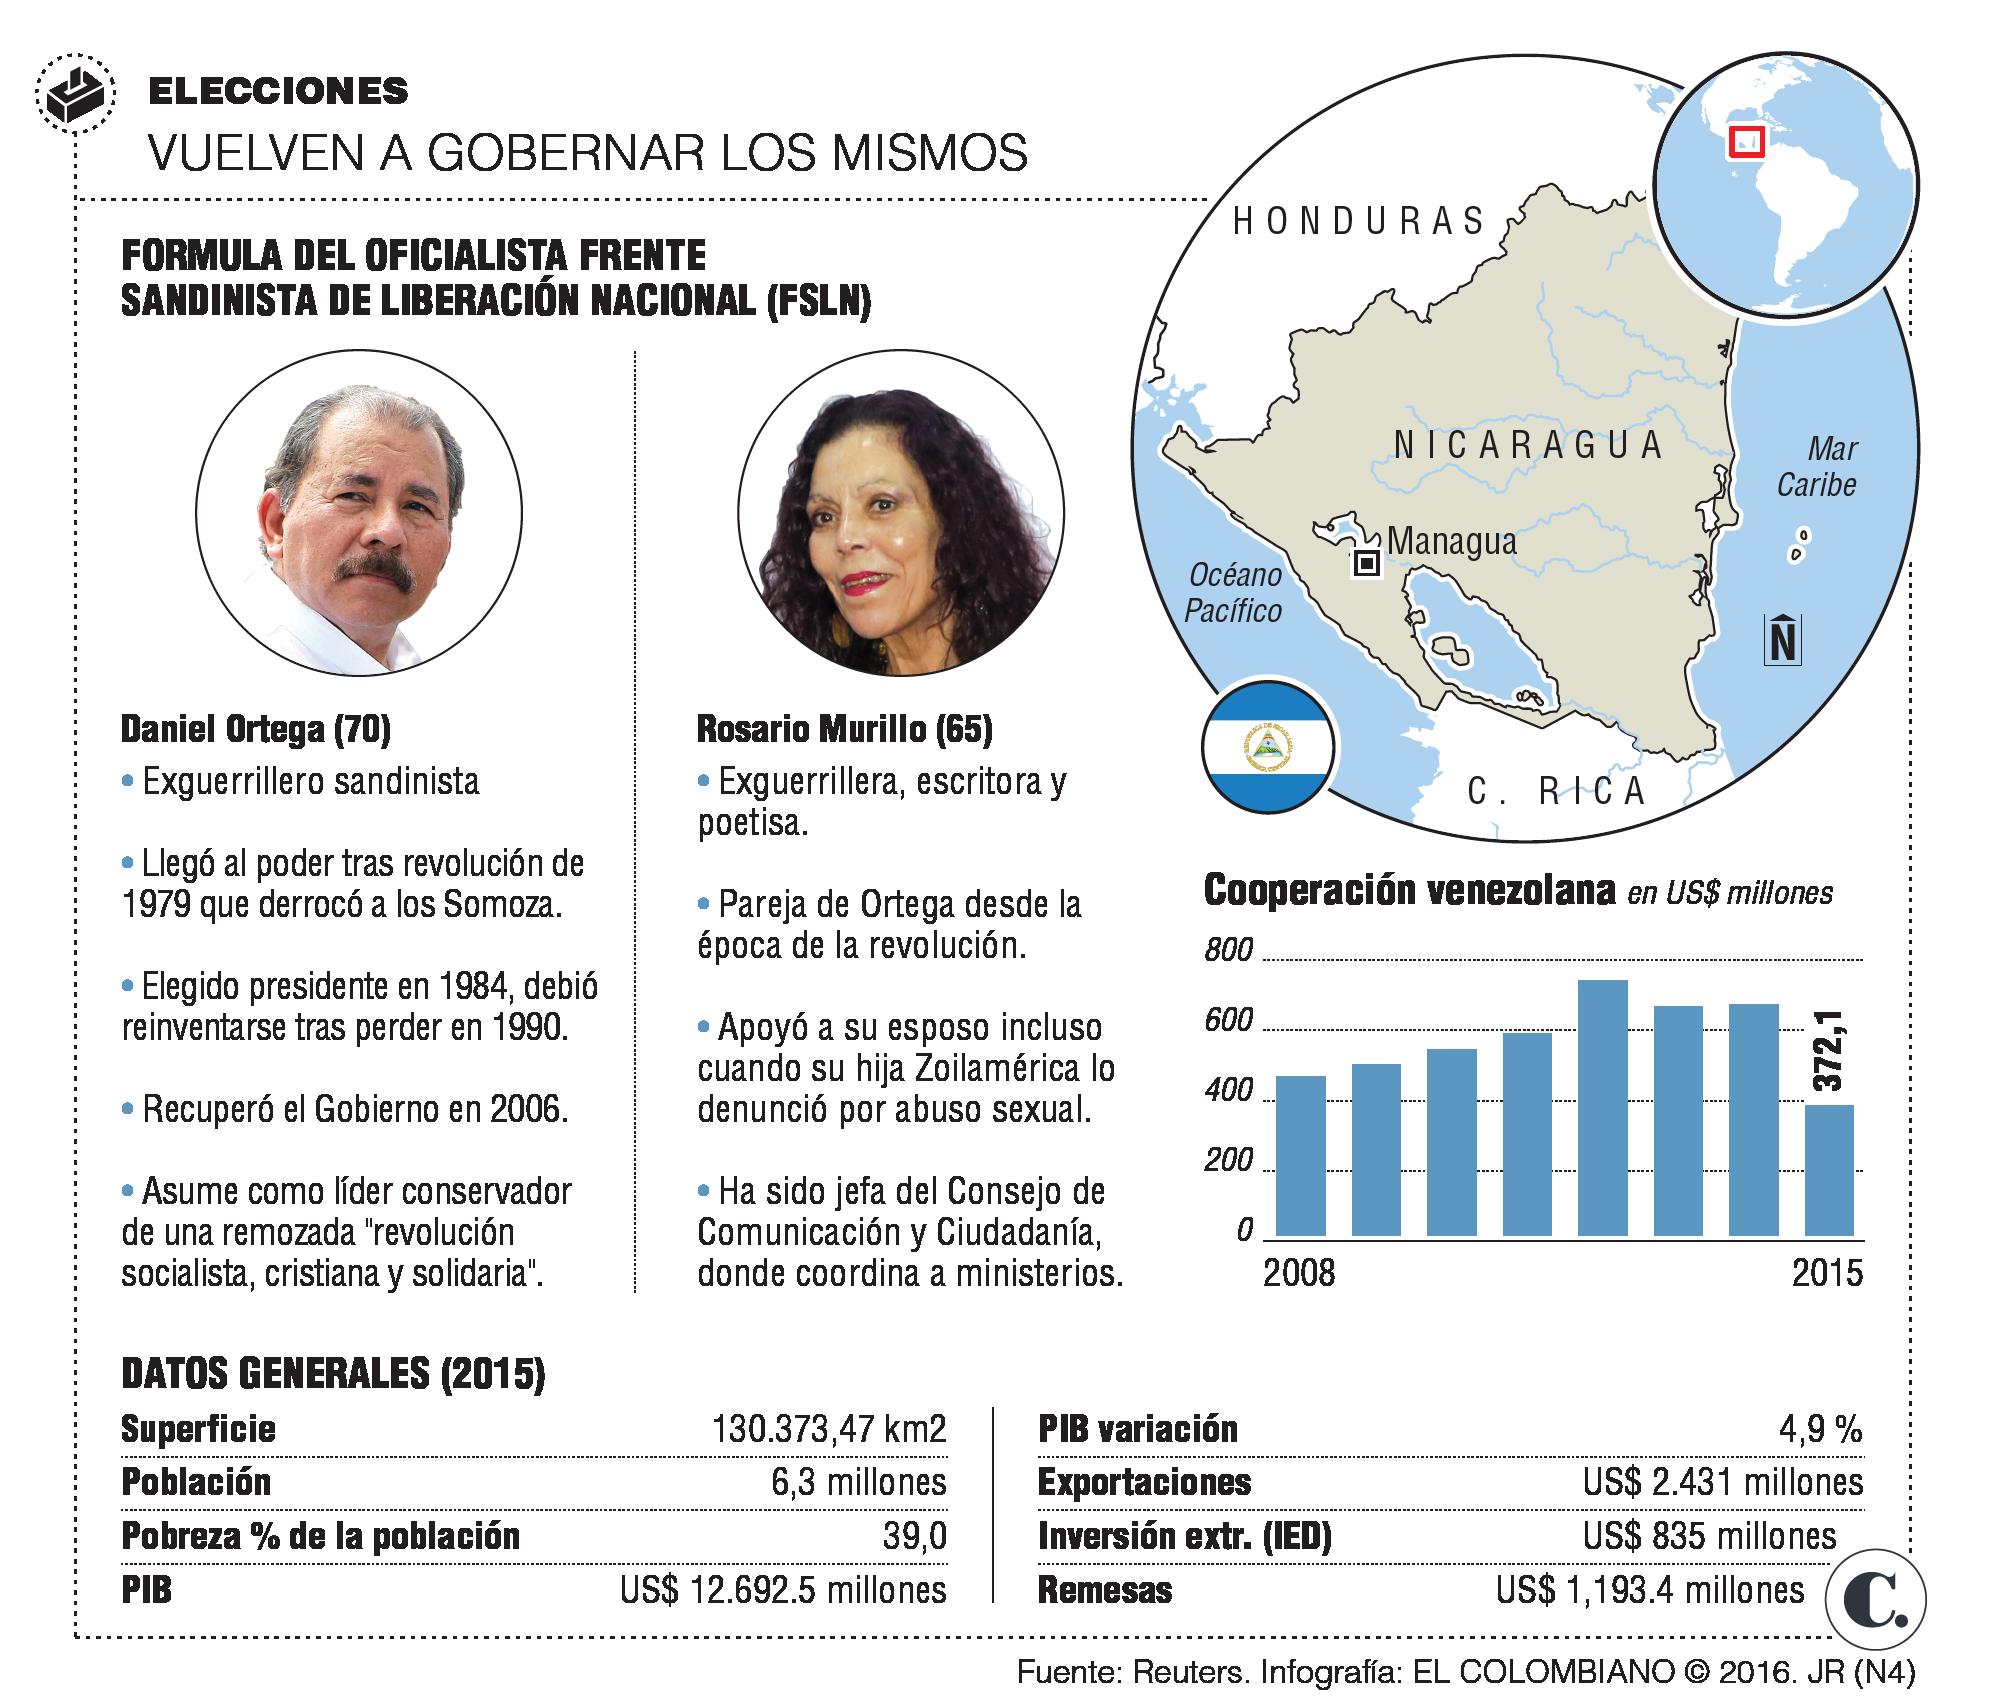 La dinastía Ortega seguiría al mando en Nicaragua 